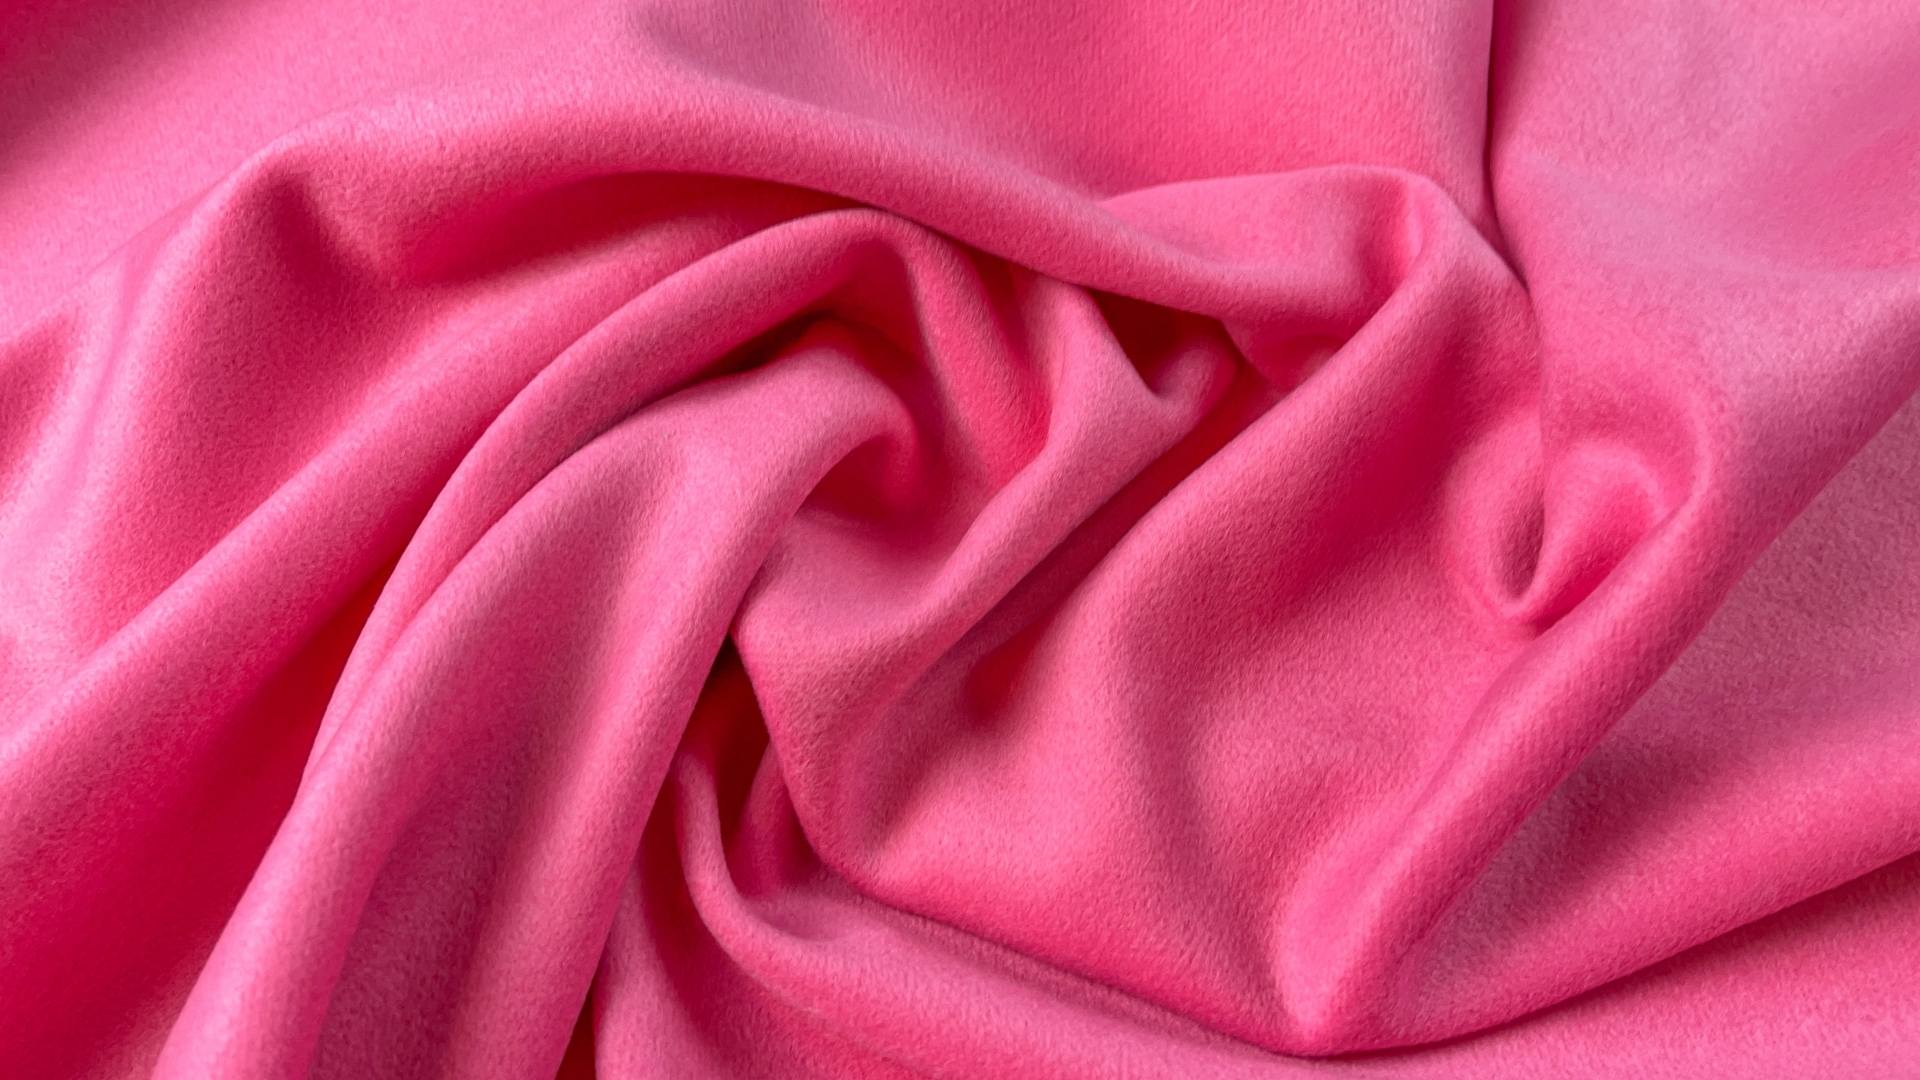 Пальтовая ткань нежно розового оттенка. Полотно с мельчайшим ворсиком, едва заметным, имеет легкий отлив. Полотно довольно плотное, 800 гр м/п, отлично будет смотреться в прямой классике и пальто-рубашке.